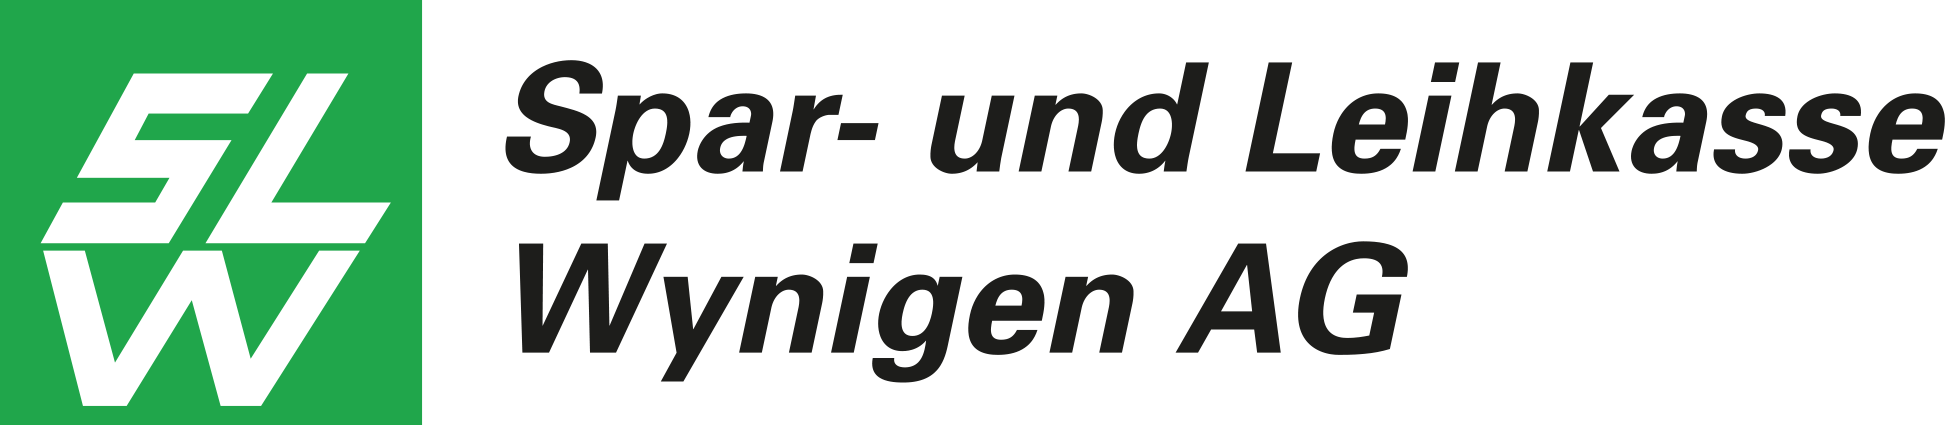 Logo-Sar und Leihkasse Wynigenpng